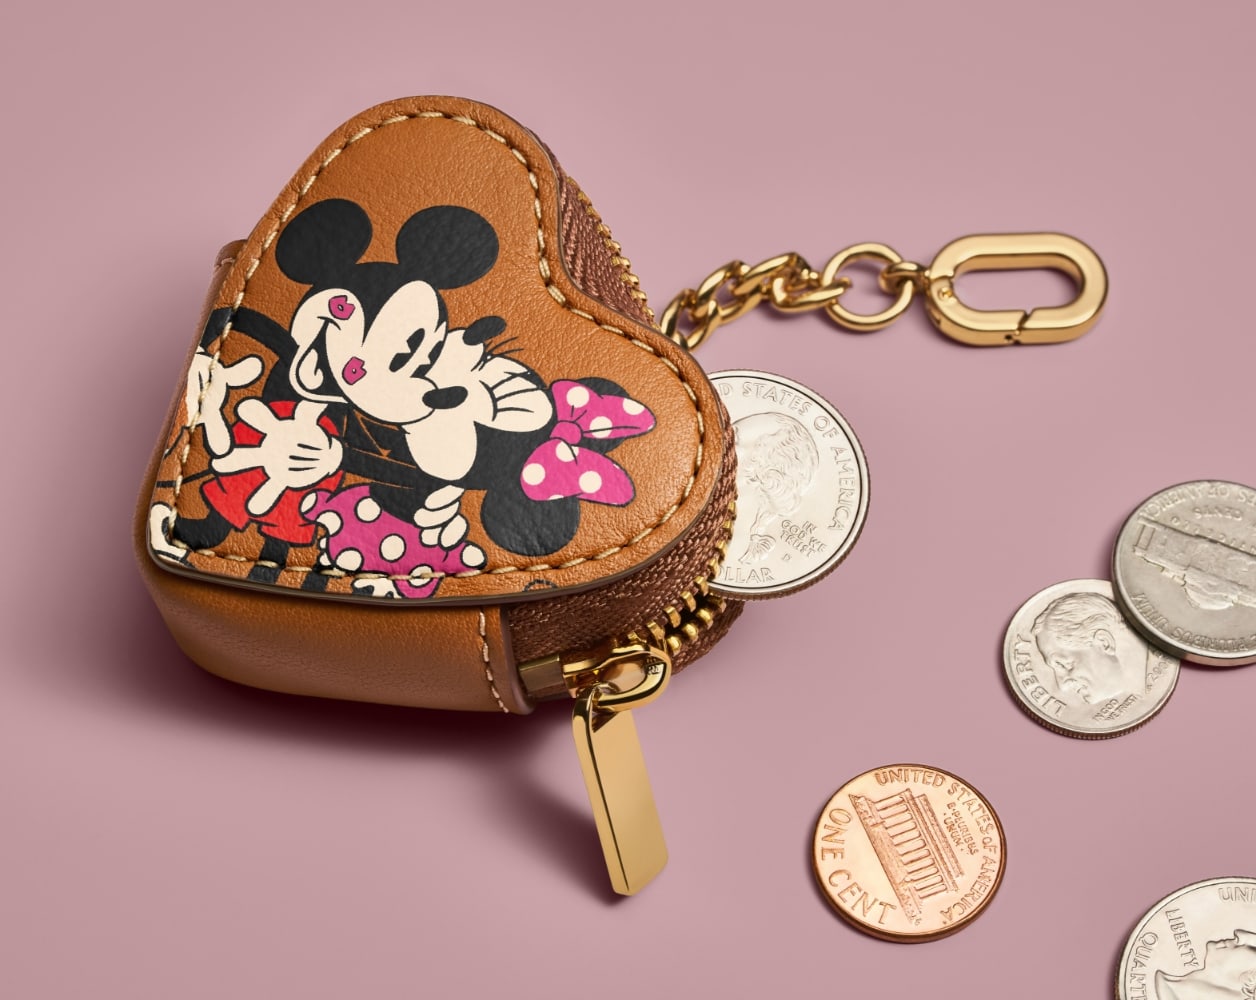 Le porte-monnaie en cuir brun en forme de cœur, marqués à l’effigie de Mickey et Minnie, contenant et cerné de pièces de monnaie.